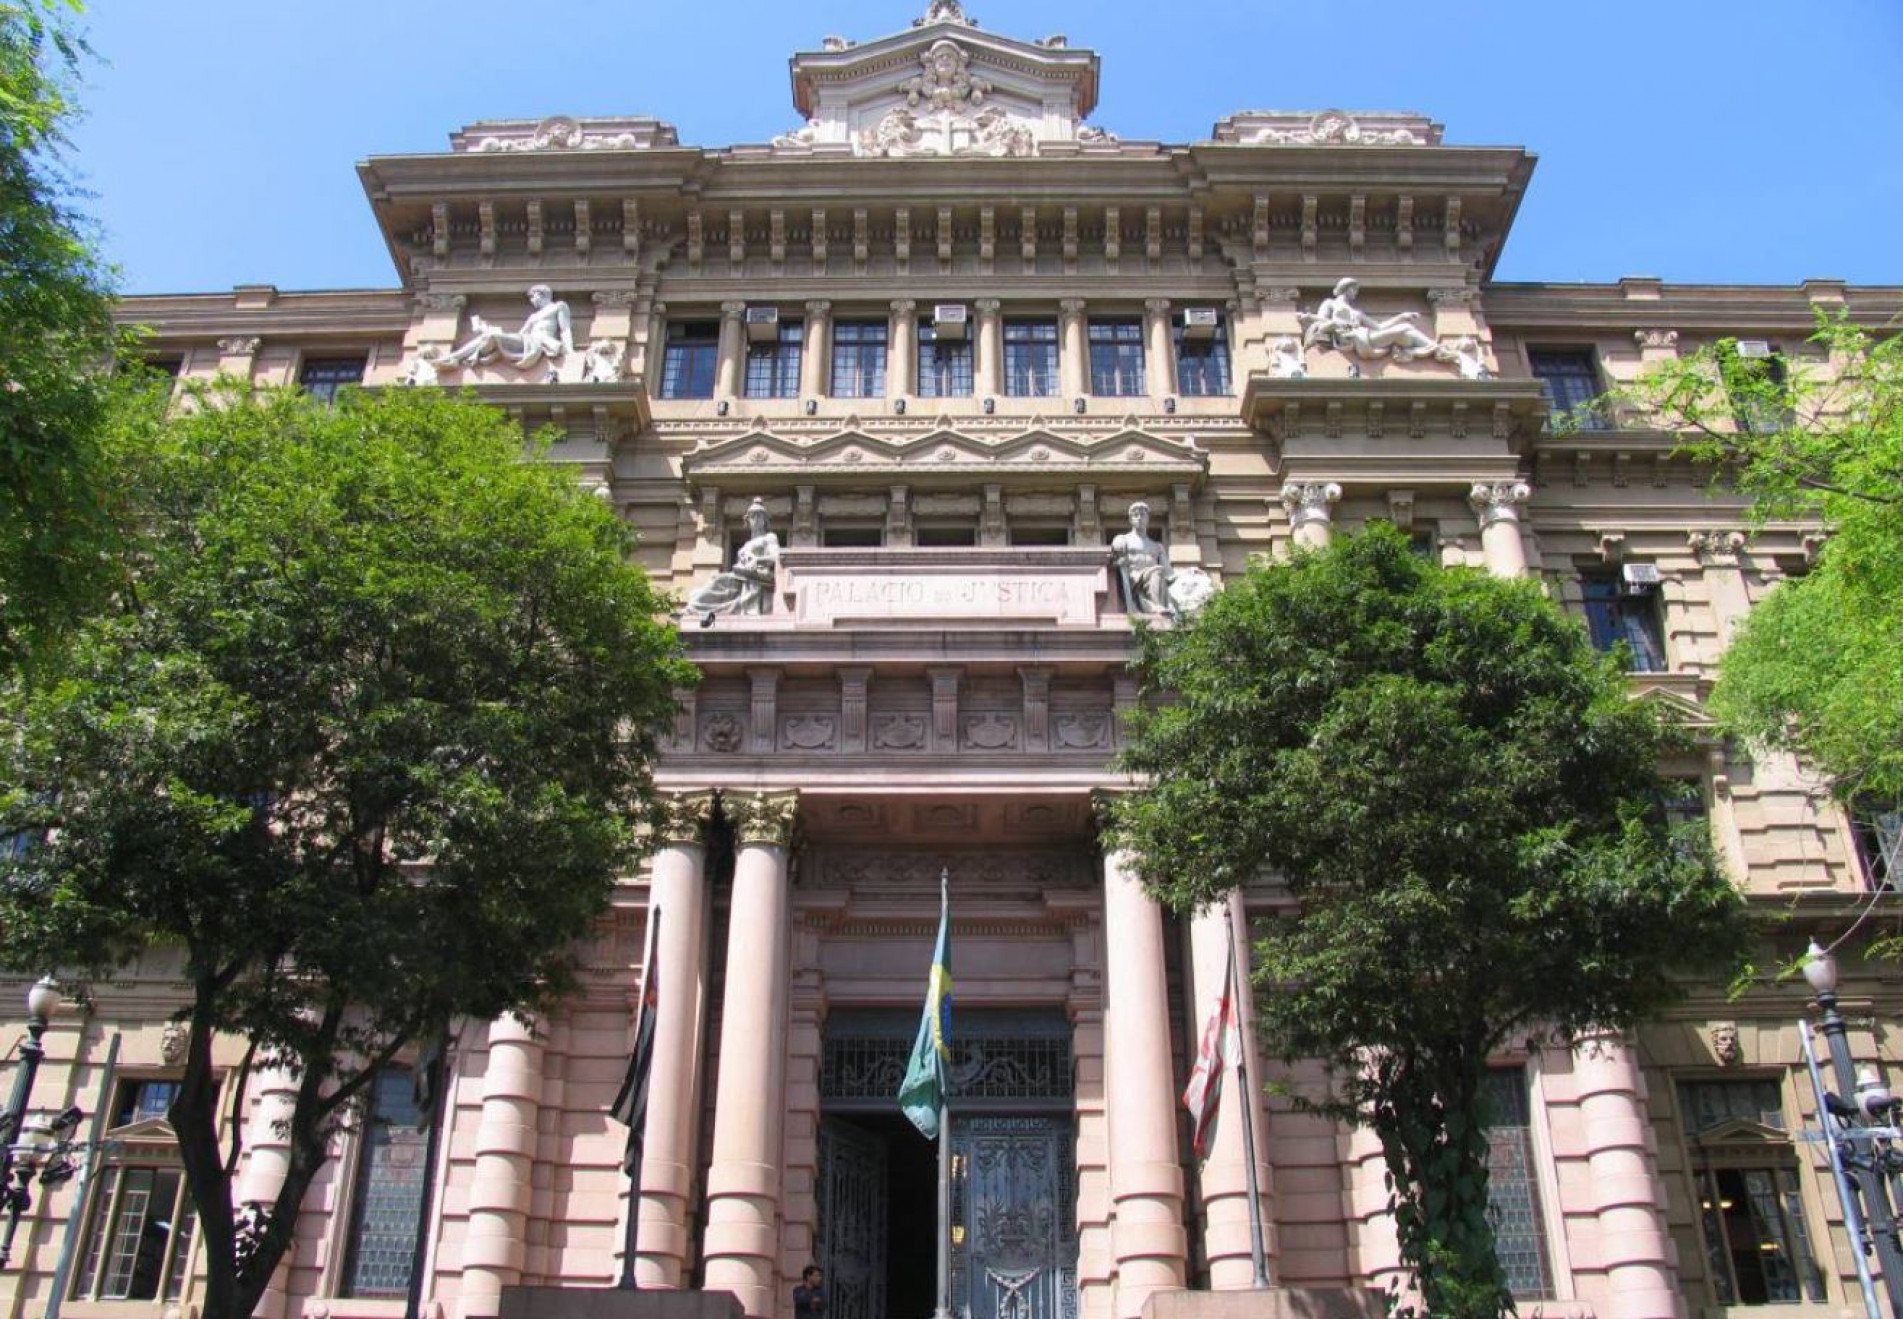 O Palácio de Justiça é a sede do Tribunal de Justiça do Estado de São Paulo.